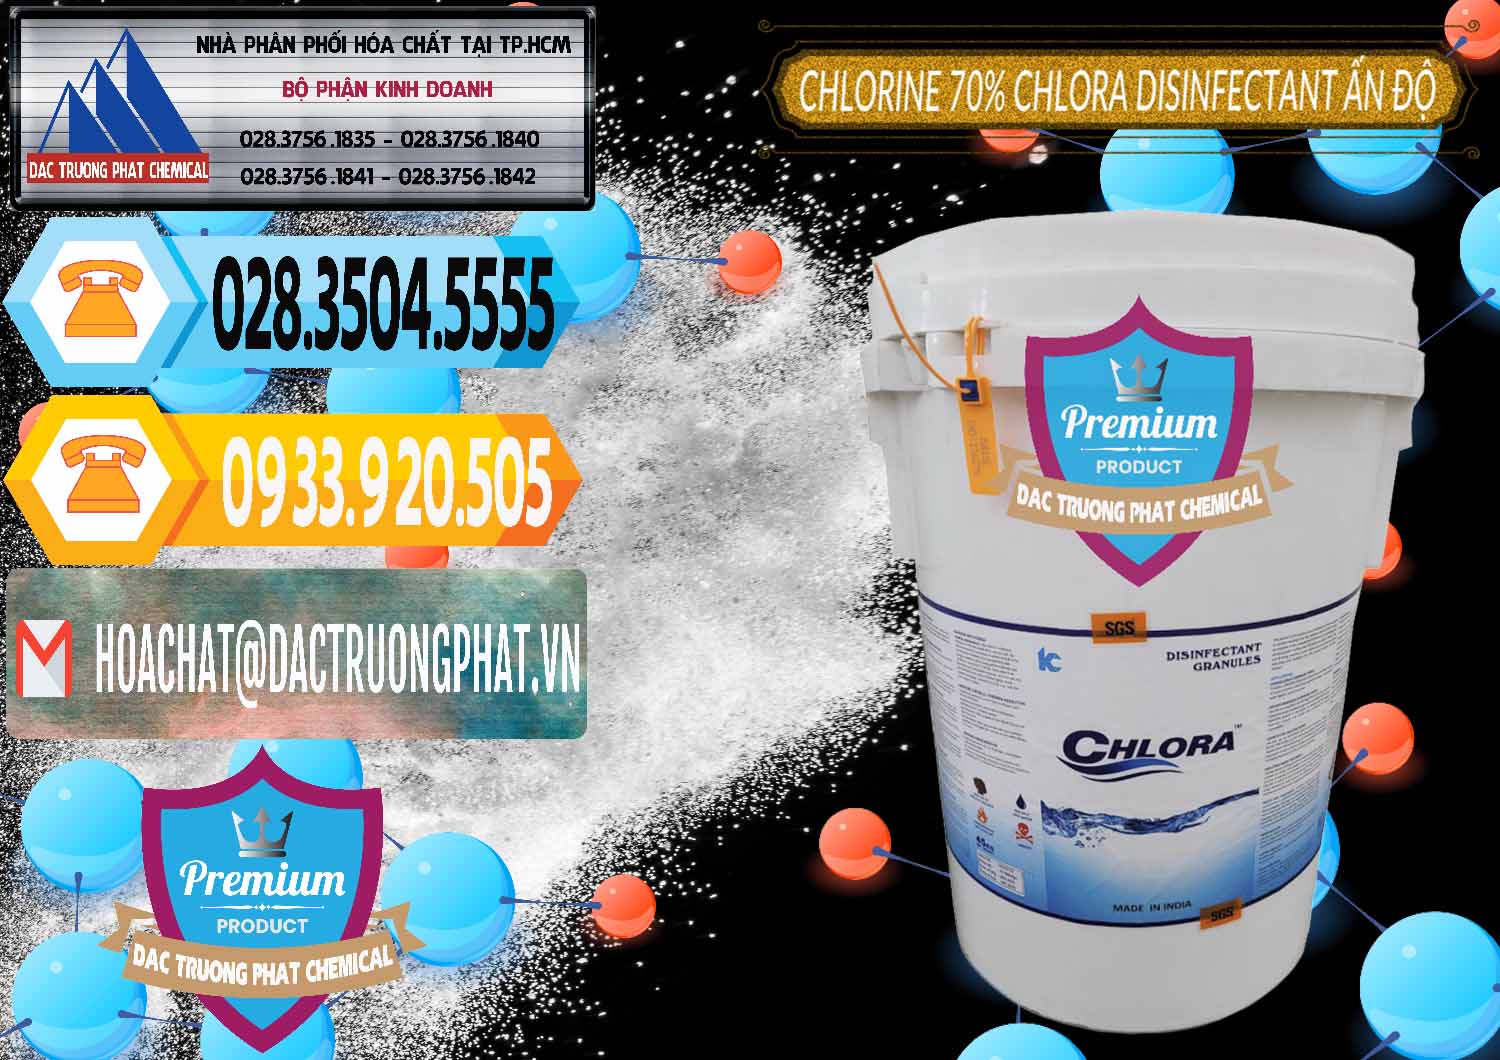 Đơn vị bán _ phân phối Chlorine – Clorin 70% Chlora Disinfectant Ấn Độ India - 0213 - Công ty chuyên phân phối _ nhập khẩu hóa chất tại TP.HCM - hoachattayrua.net